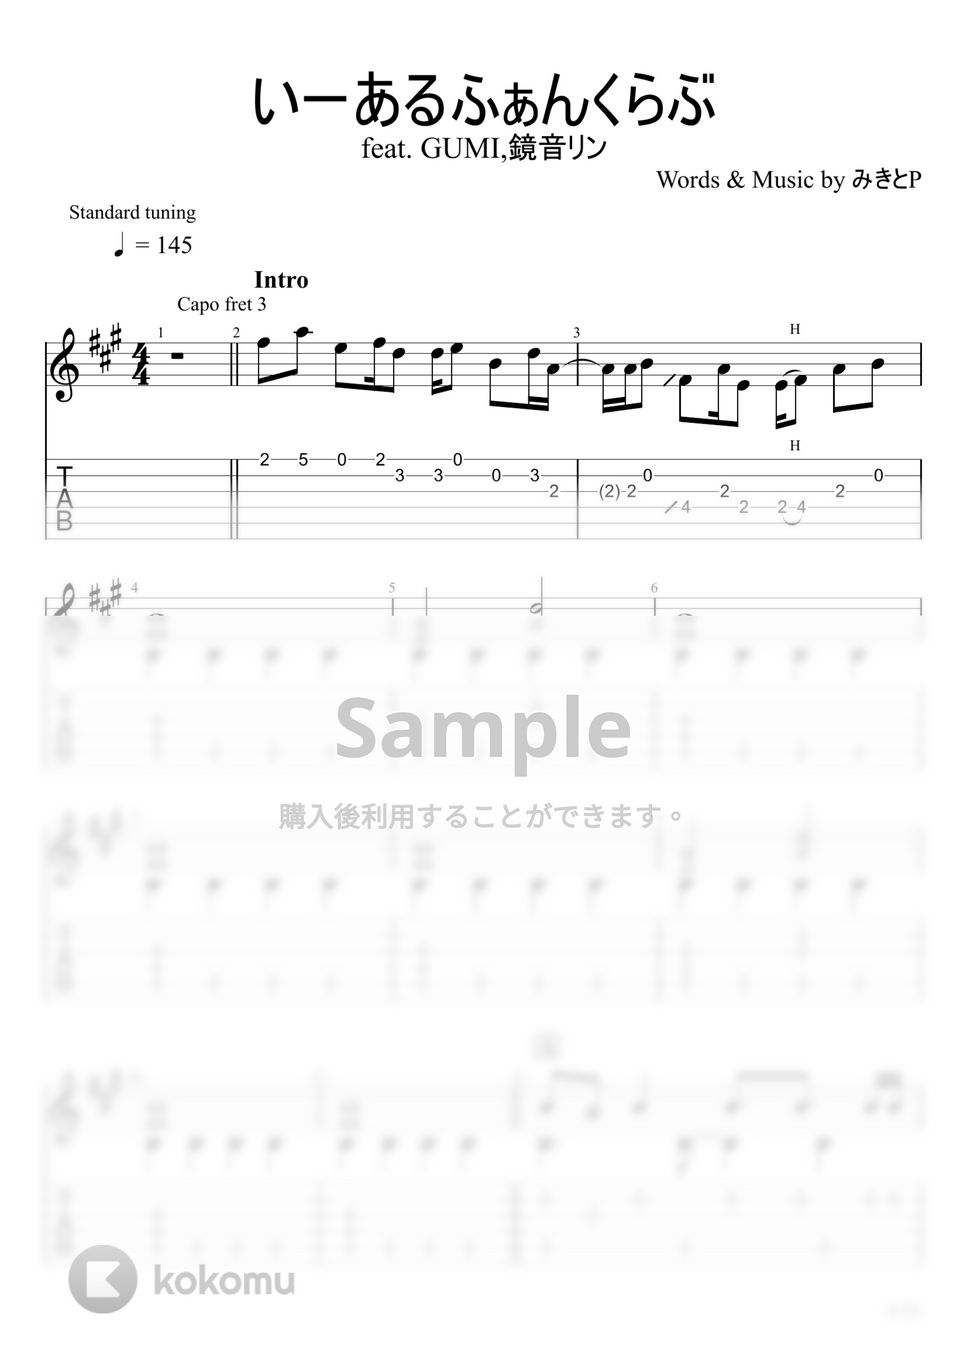 みきとP - いーあるふぁんくらぶ (ソロギター) by u3danchou